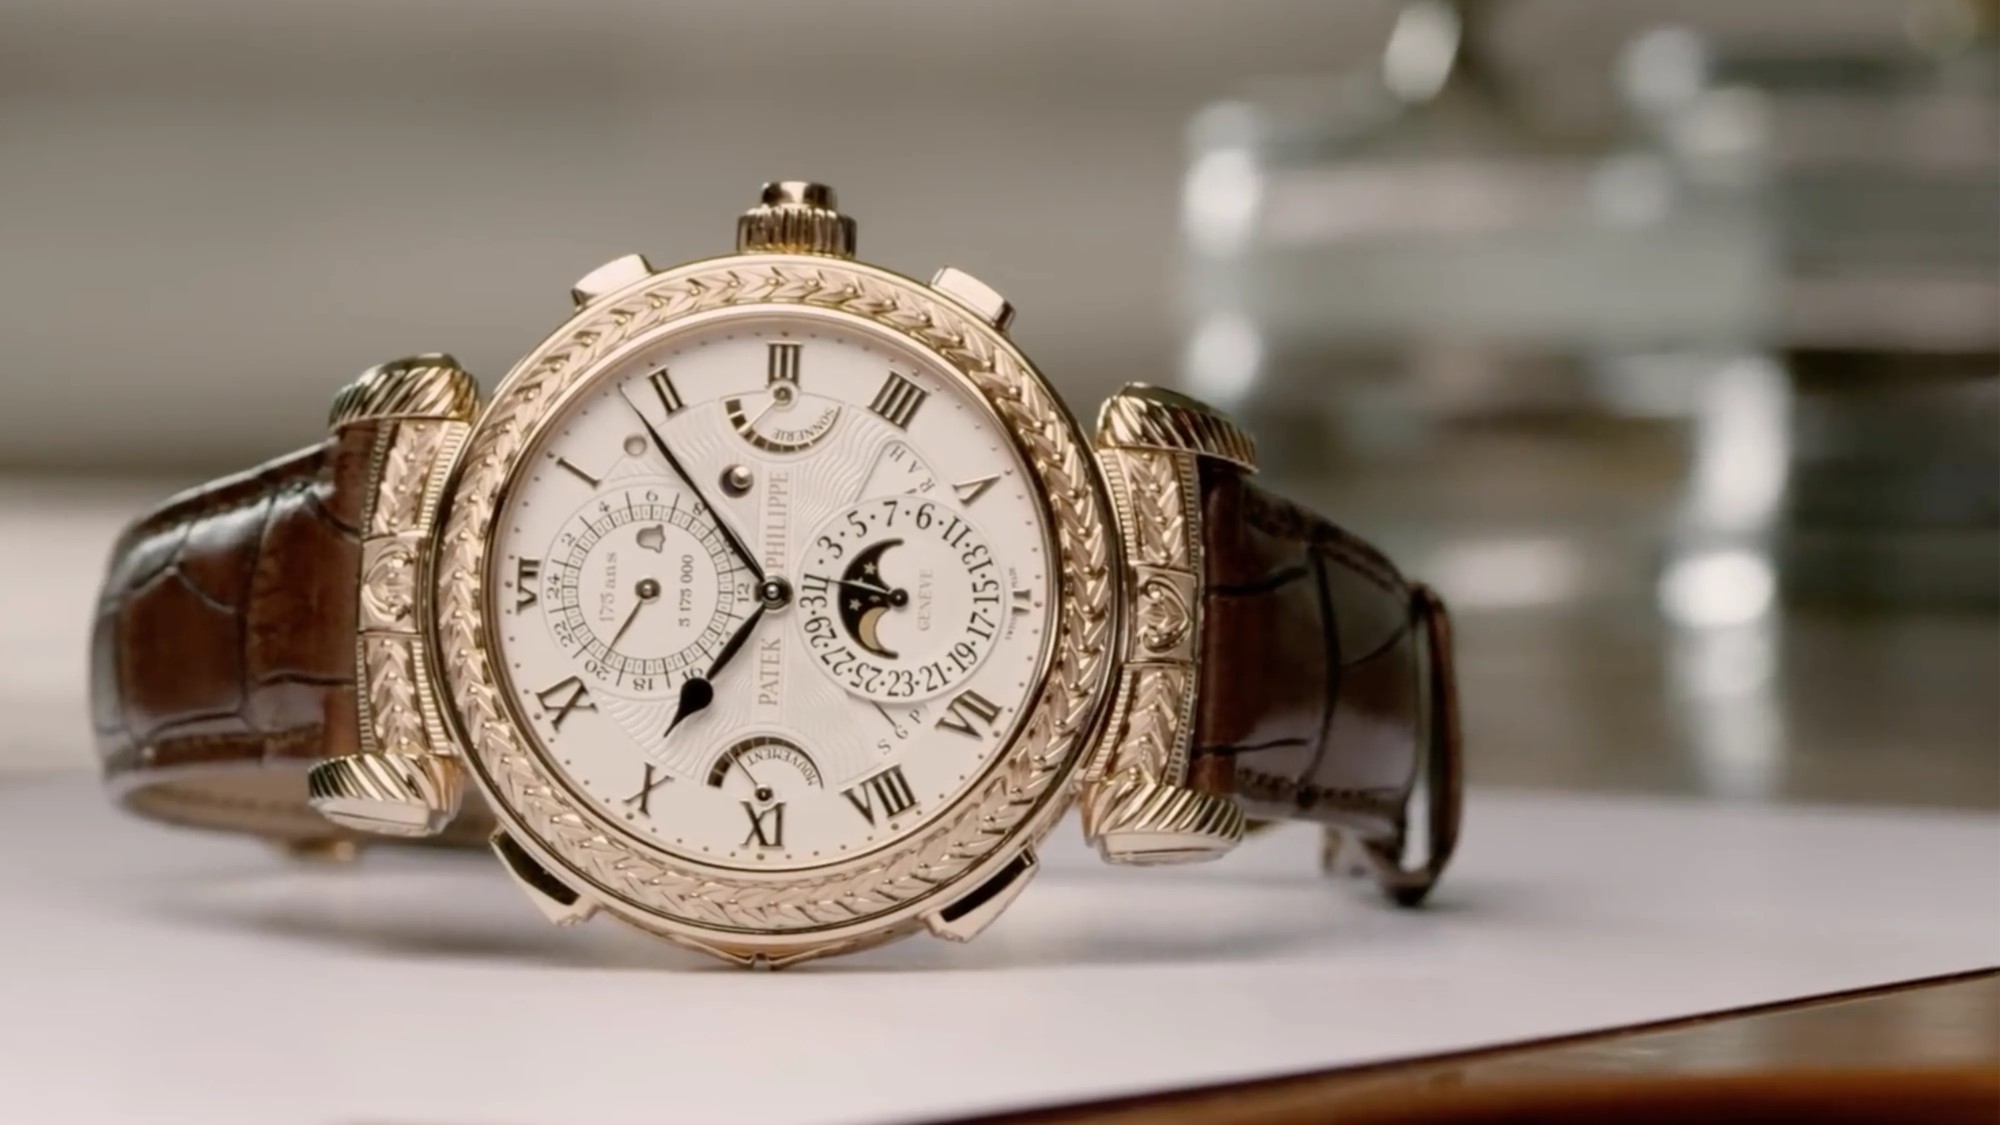  Top sản phẩm đồng hồ Patek Philippe đắt nhất thế giới hiện nay